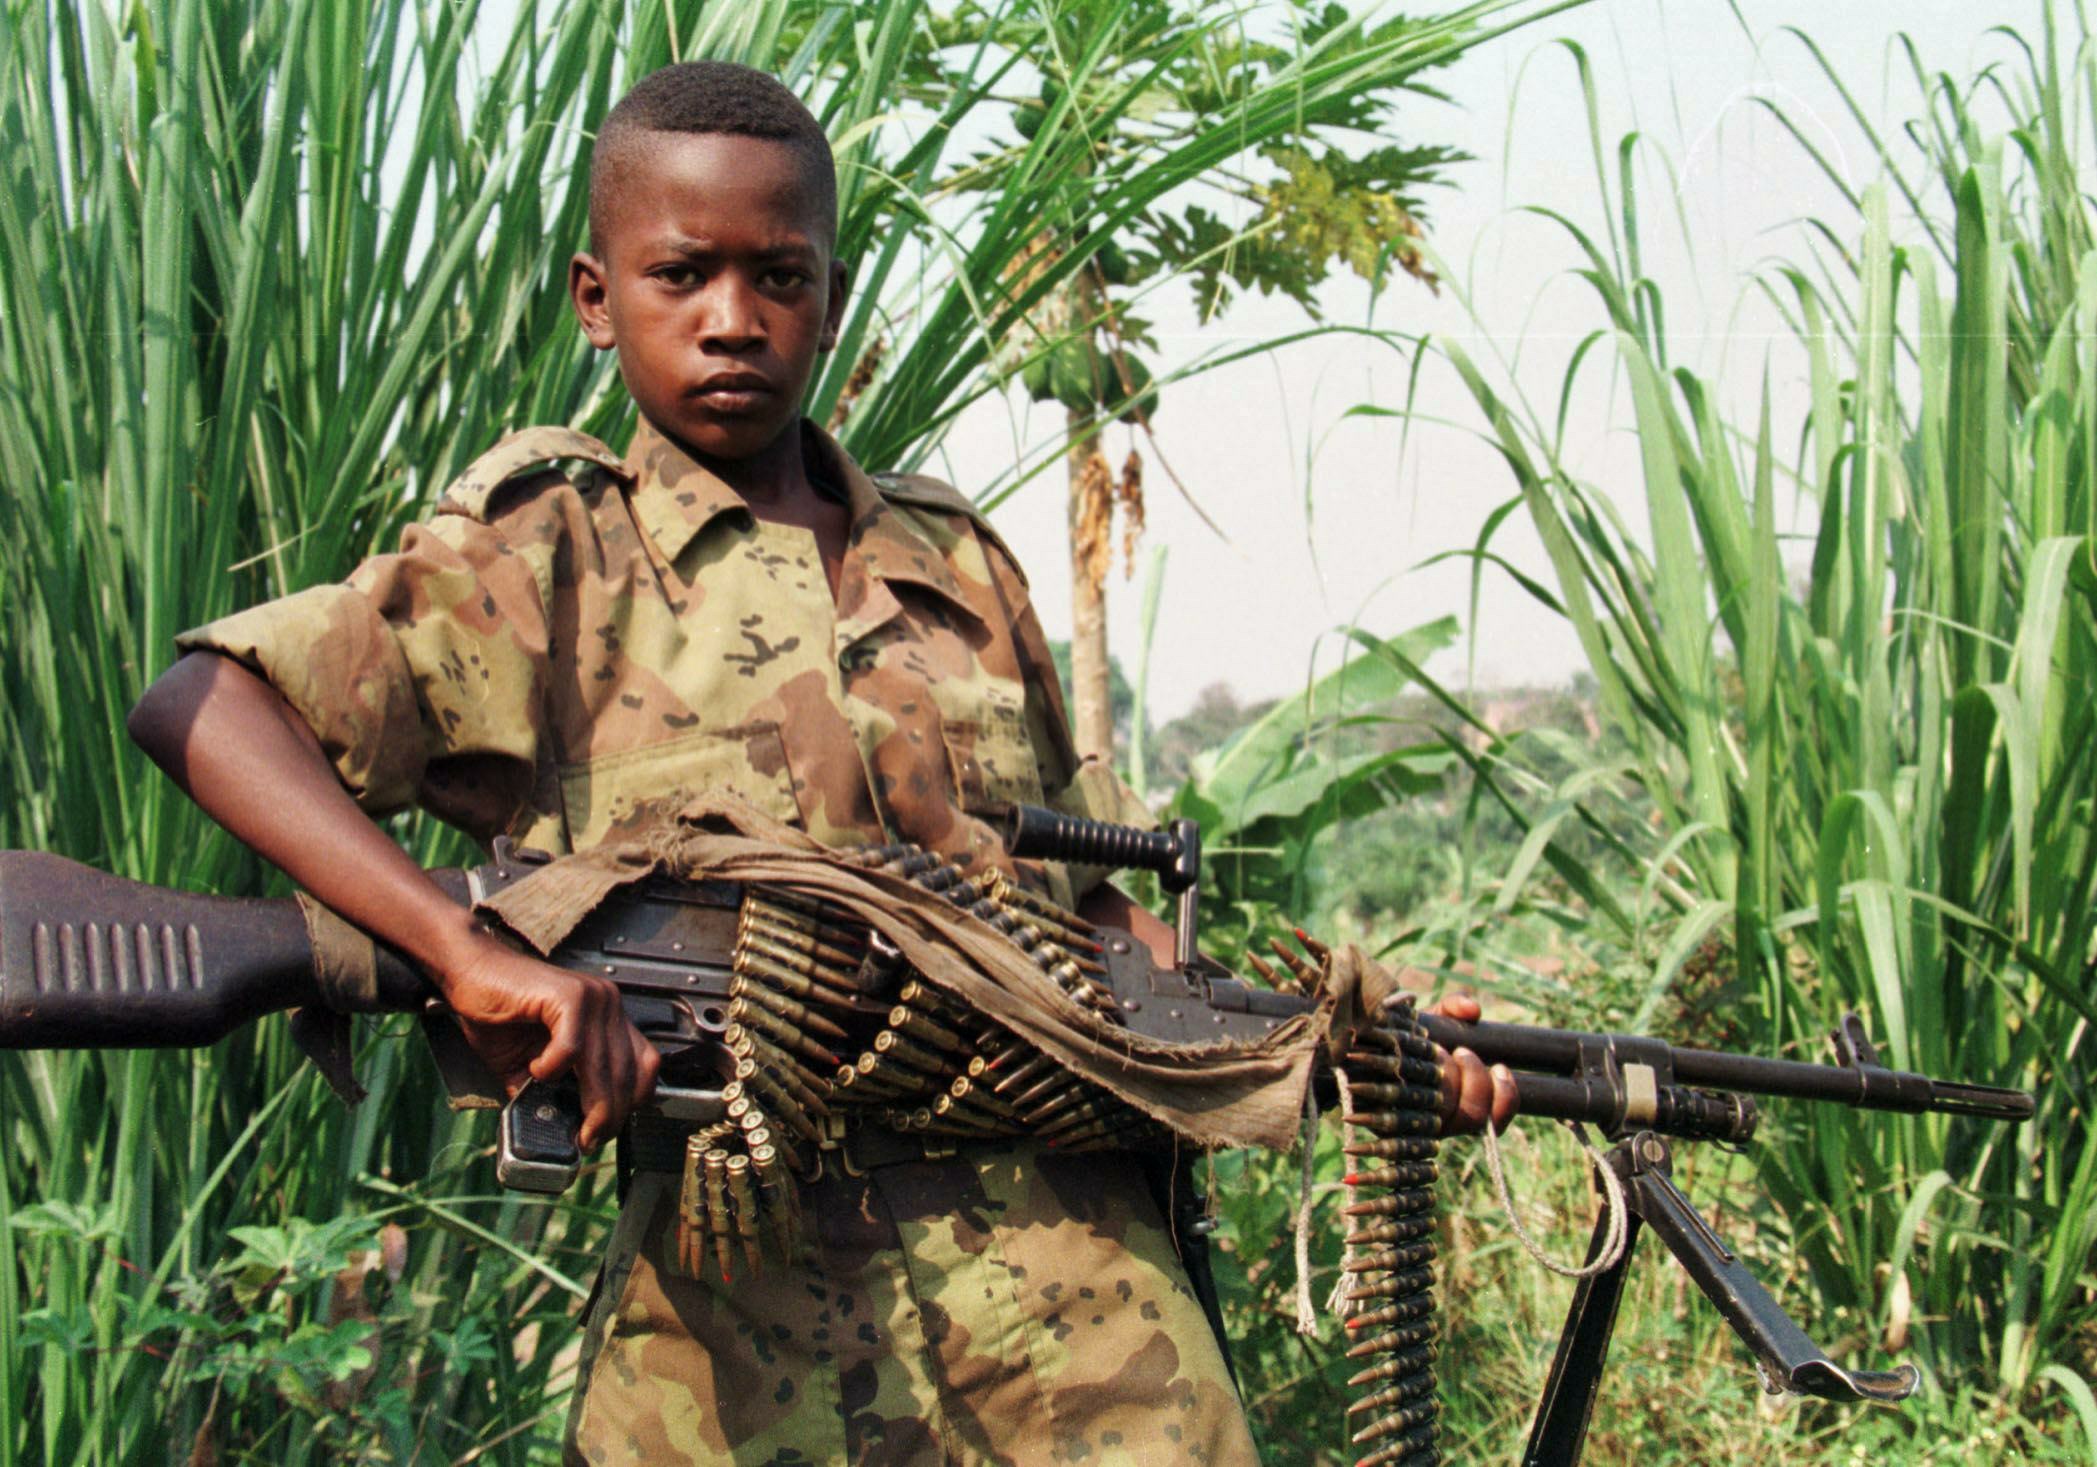 Bambini-soldato: così hanno rubato loro l'infanzia e li hanno trasformati in strumenti di morte